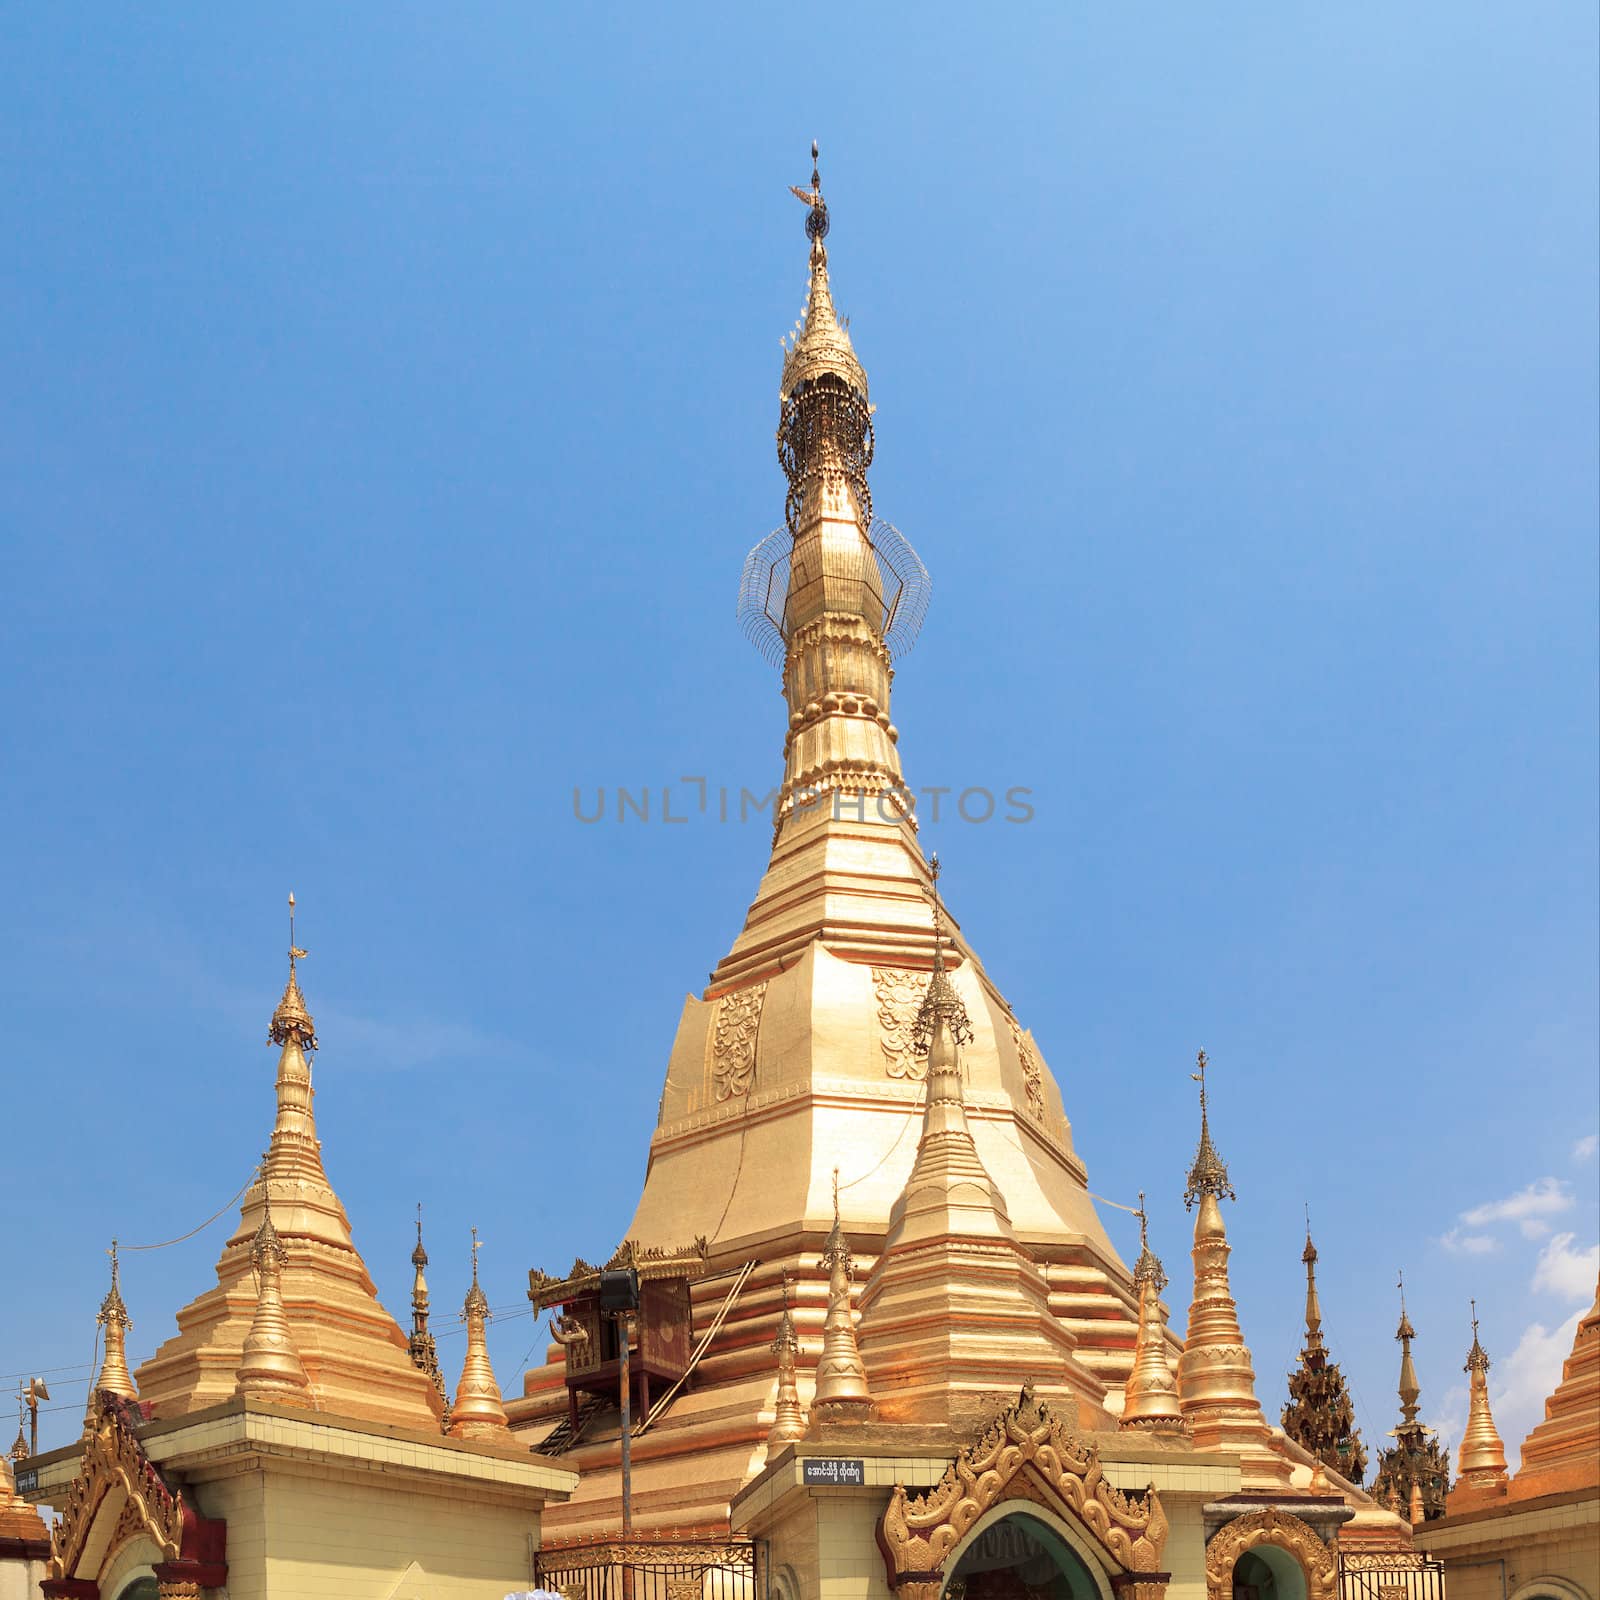 Sule pagoda in Yangon, Burma (Myanmar) by FrameAngel